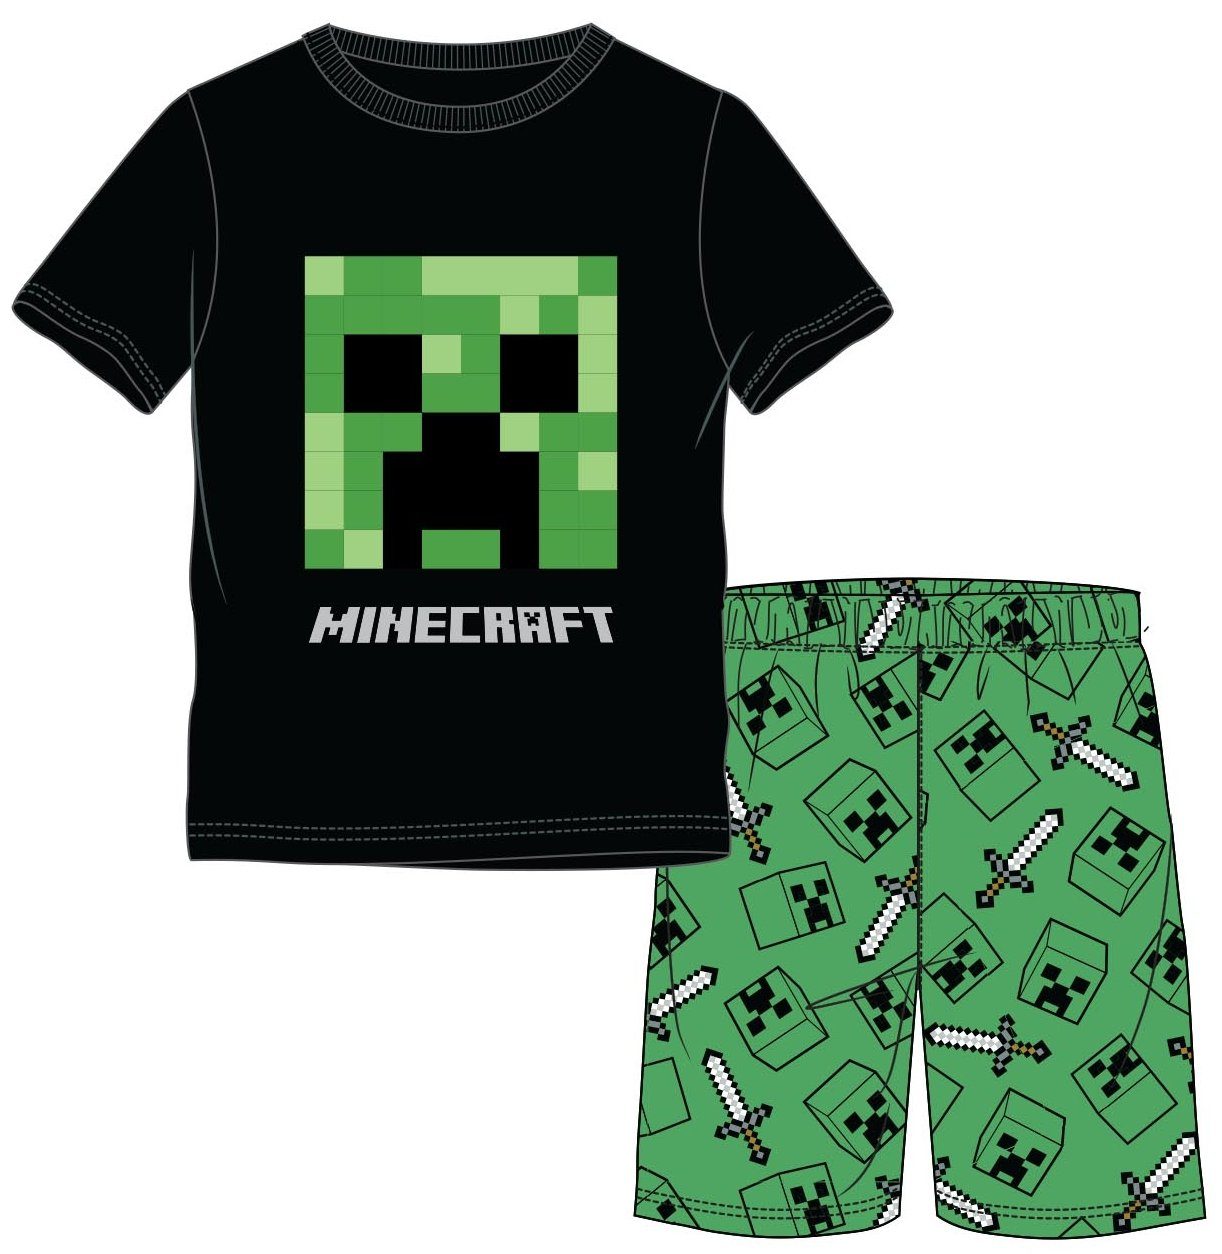 Wäsche/Bademode Nachtwäsche Minecraft Pyjama MINECRAFT Pyjama Shorts Schlafanzug Jungen und Mädchen schwarz - grün Gr. 116 128 1